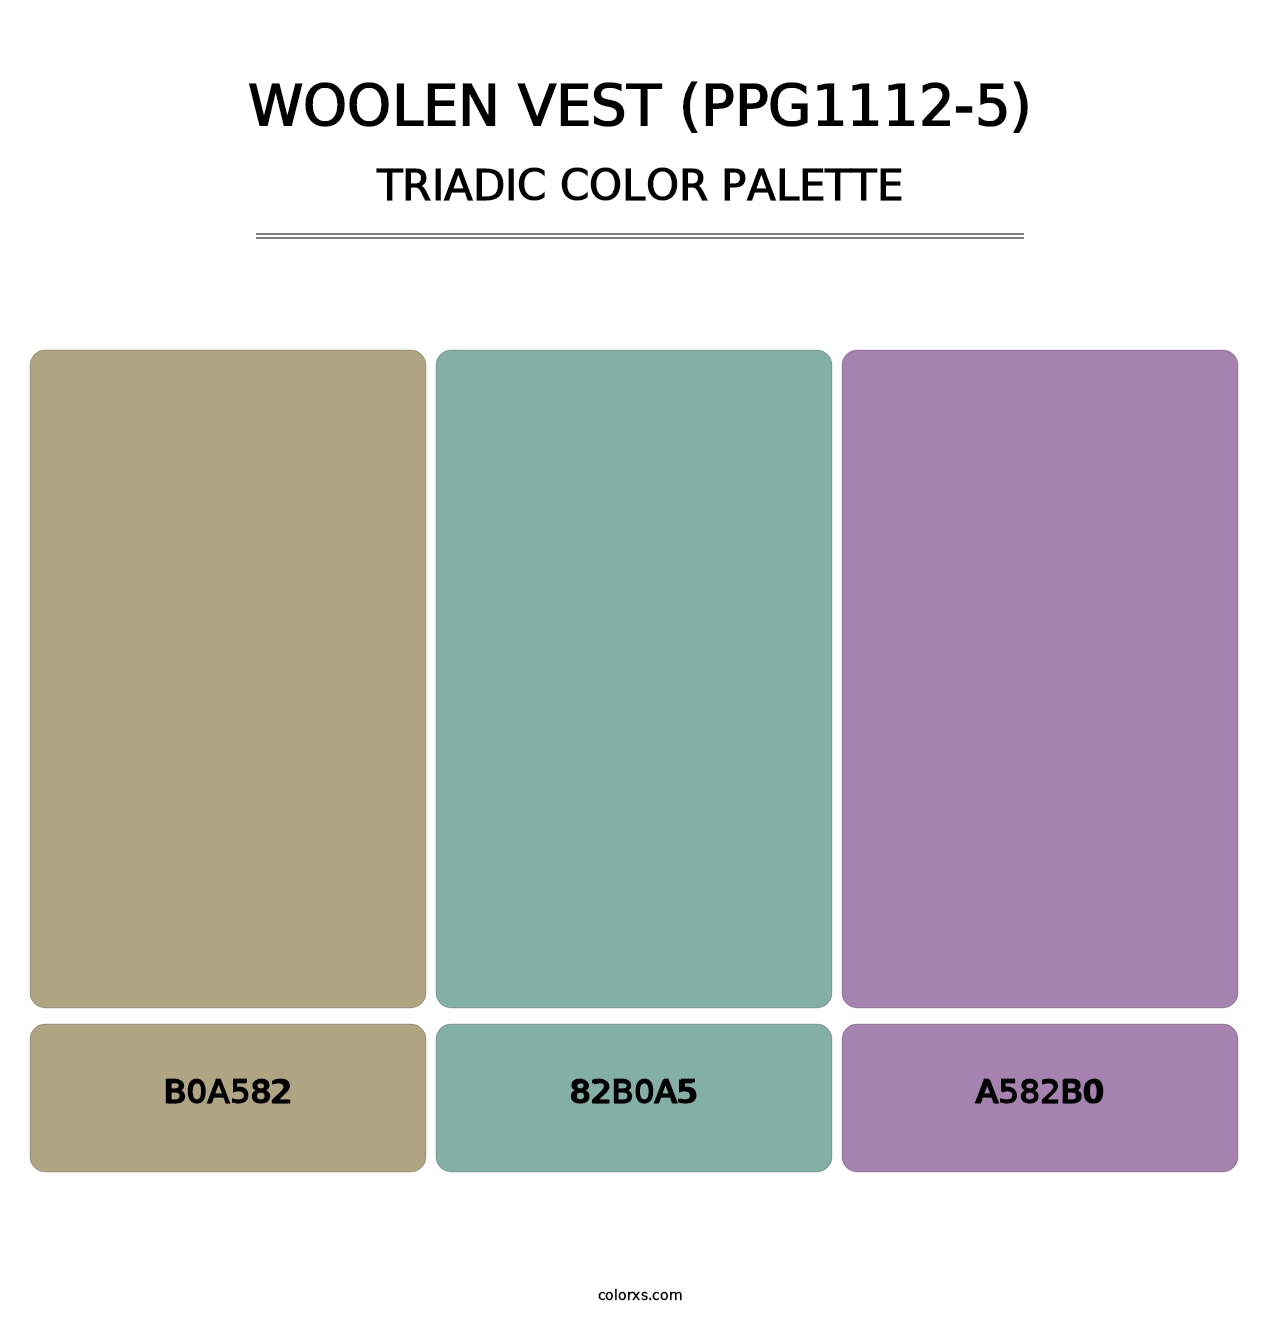 Woolen Vest (PPG1112-5) - Triadic Color Palette